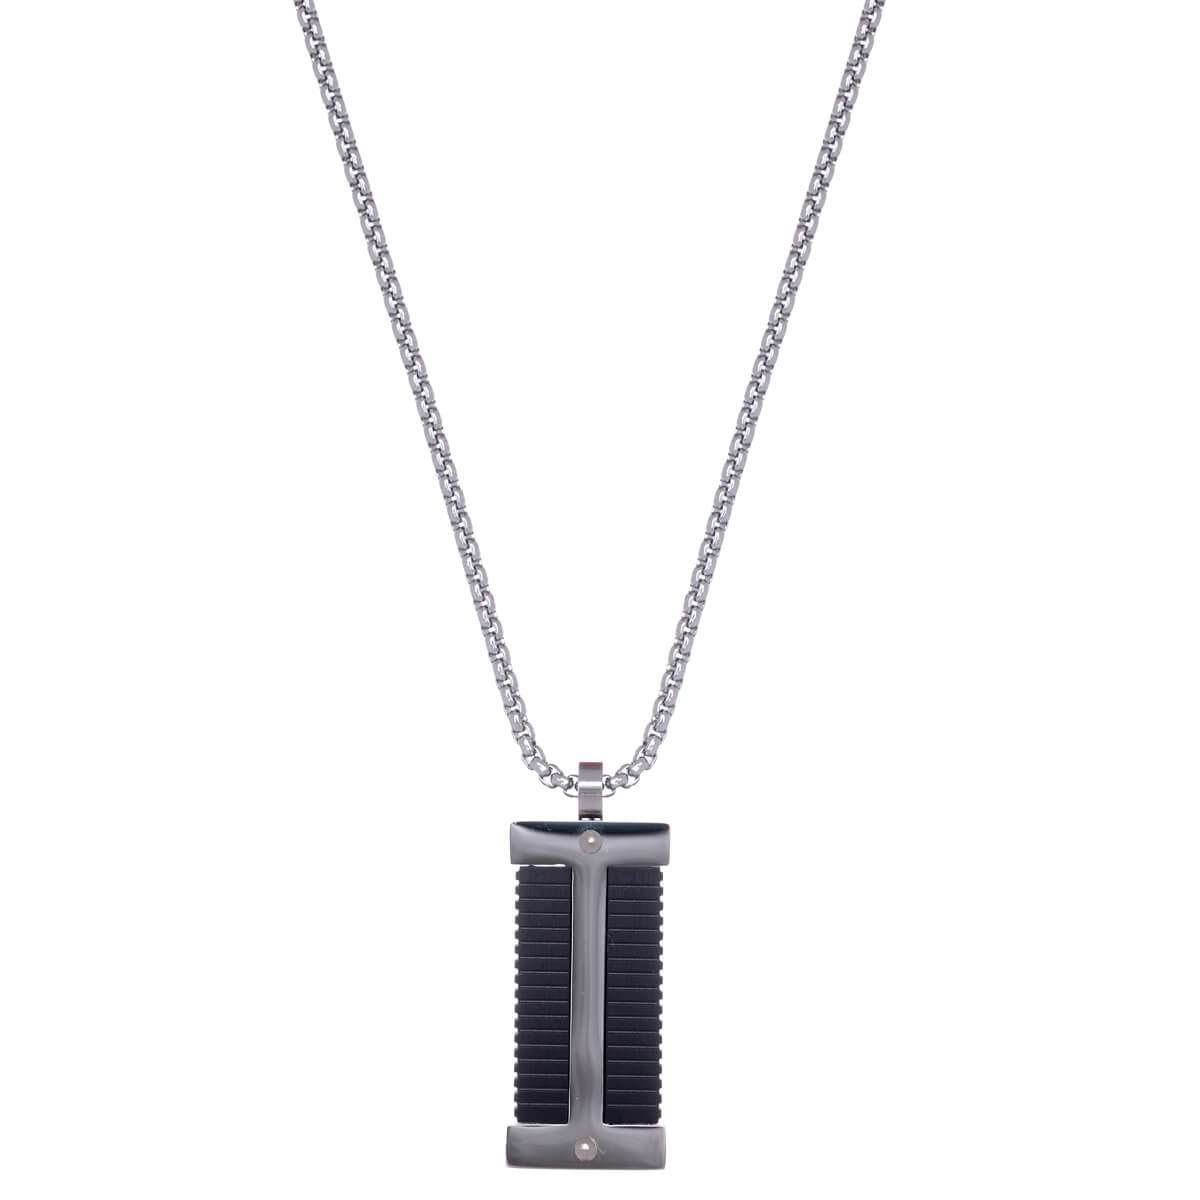 Steel black tile necklace (steel 316L)